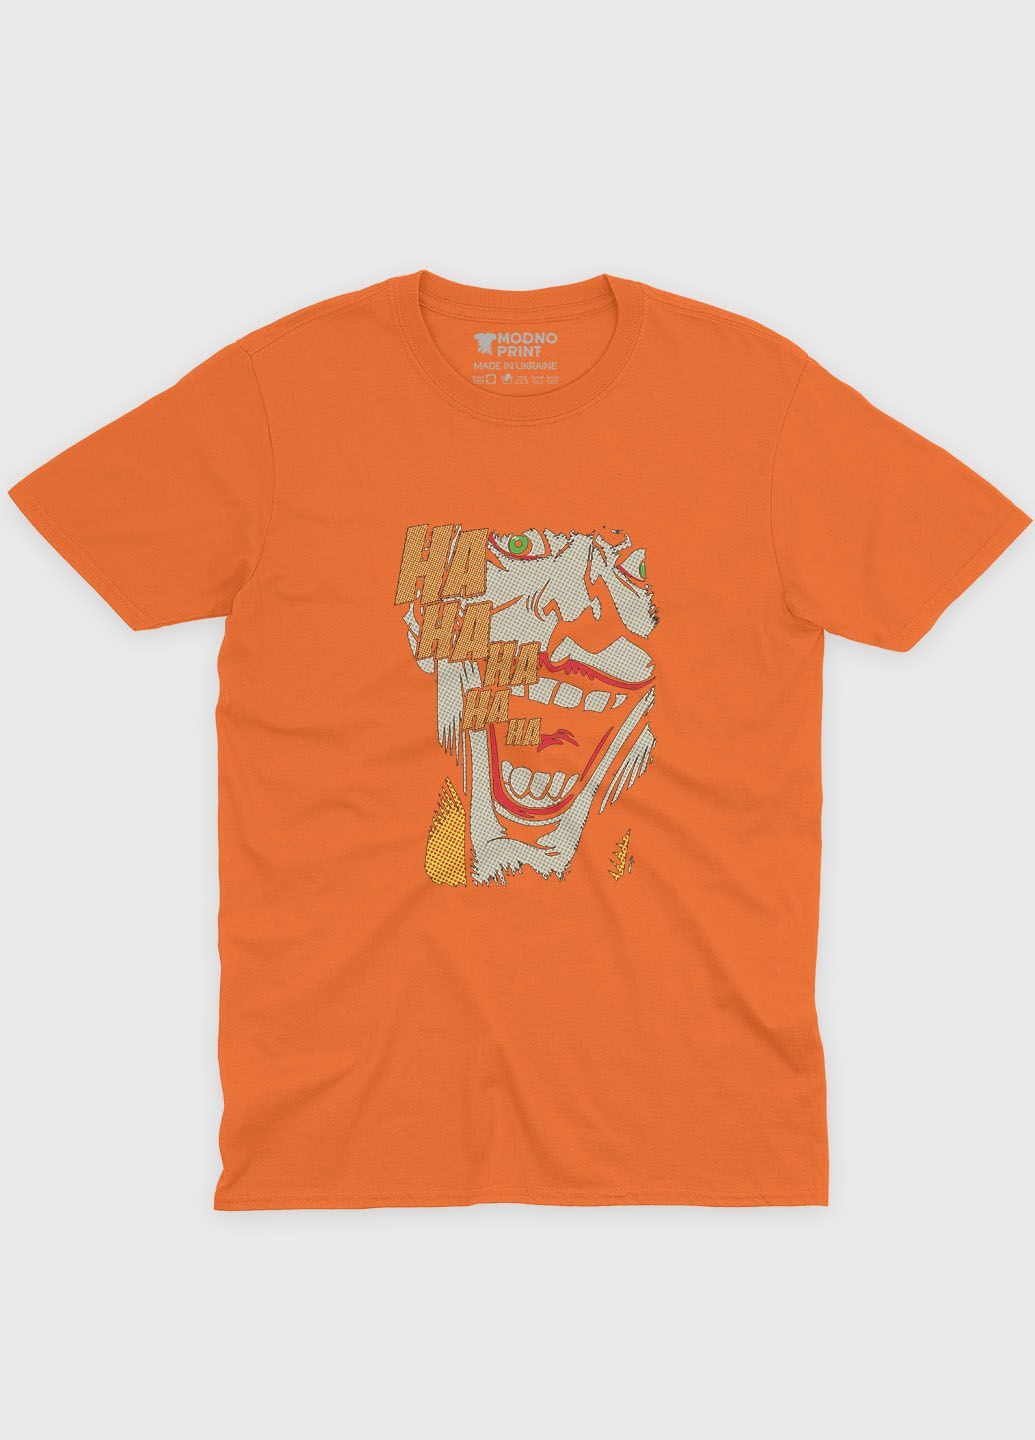 Оранжевая демисезонная футболка для мальчика с принтом супервора - джокер (ts001-1-ora-006-005-007-b) Modno